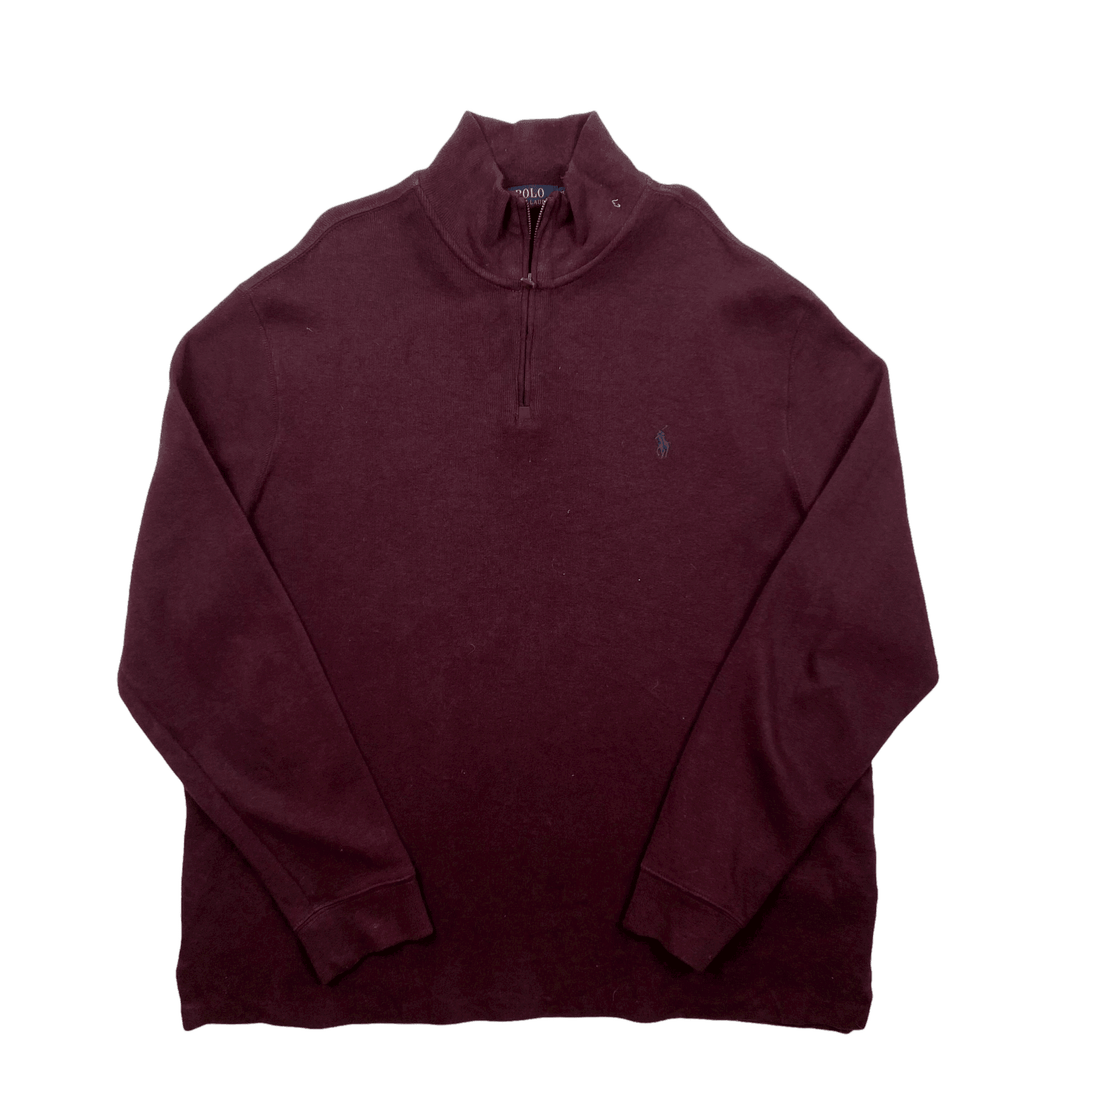 Vintage 90s Burgundy Polo Ralph Lauren Quarter Zip Sweatshirt - Extra Large - The Streetwear Studio